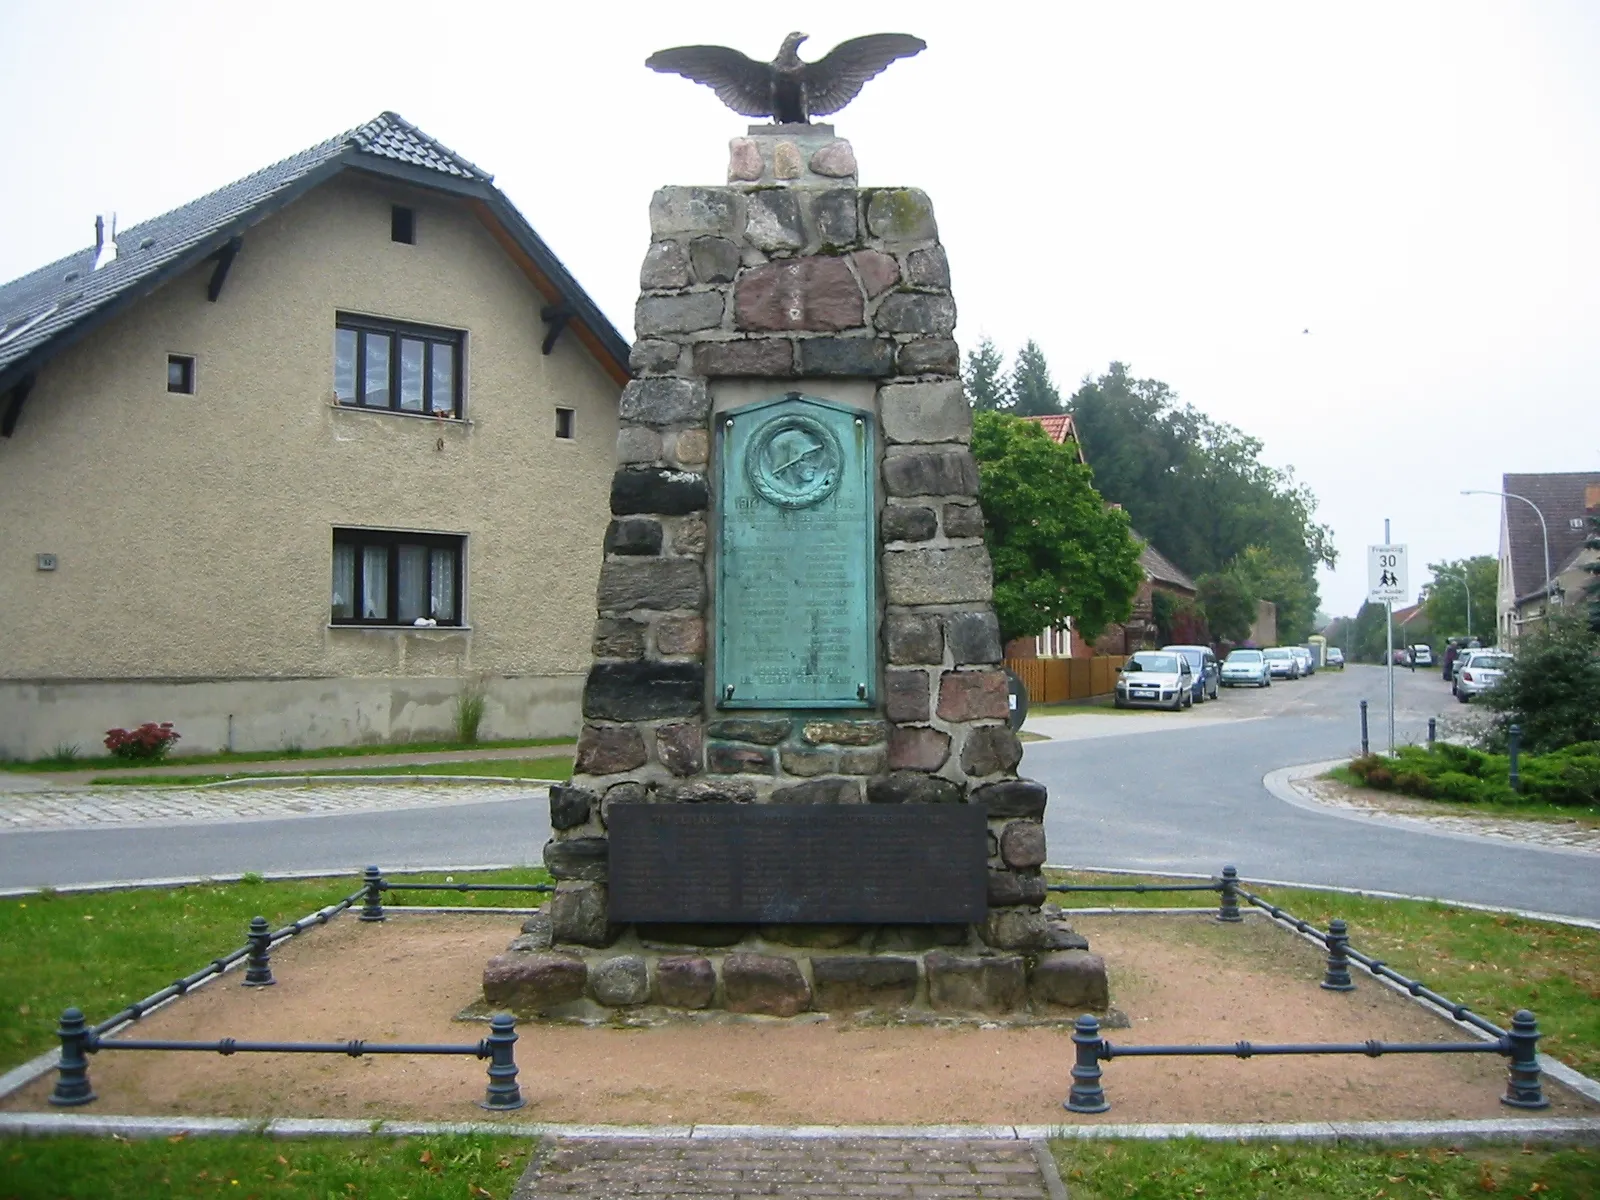 Photo showing: Denkmal für die Gefallenen der beiden Weltkriege in Münchehofe, Landkreis Dahme-Spreewald, Brandenburg